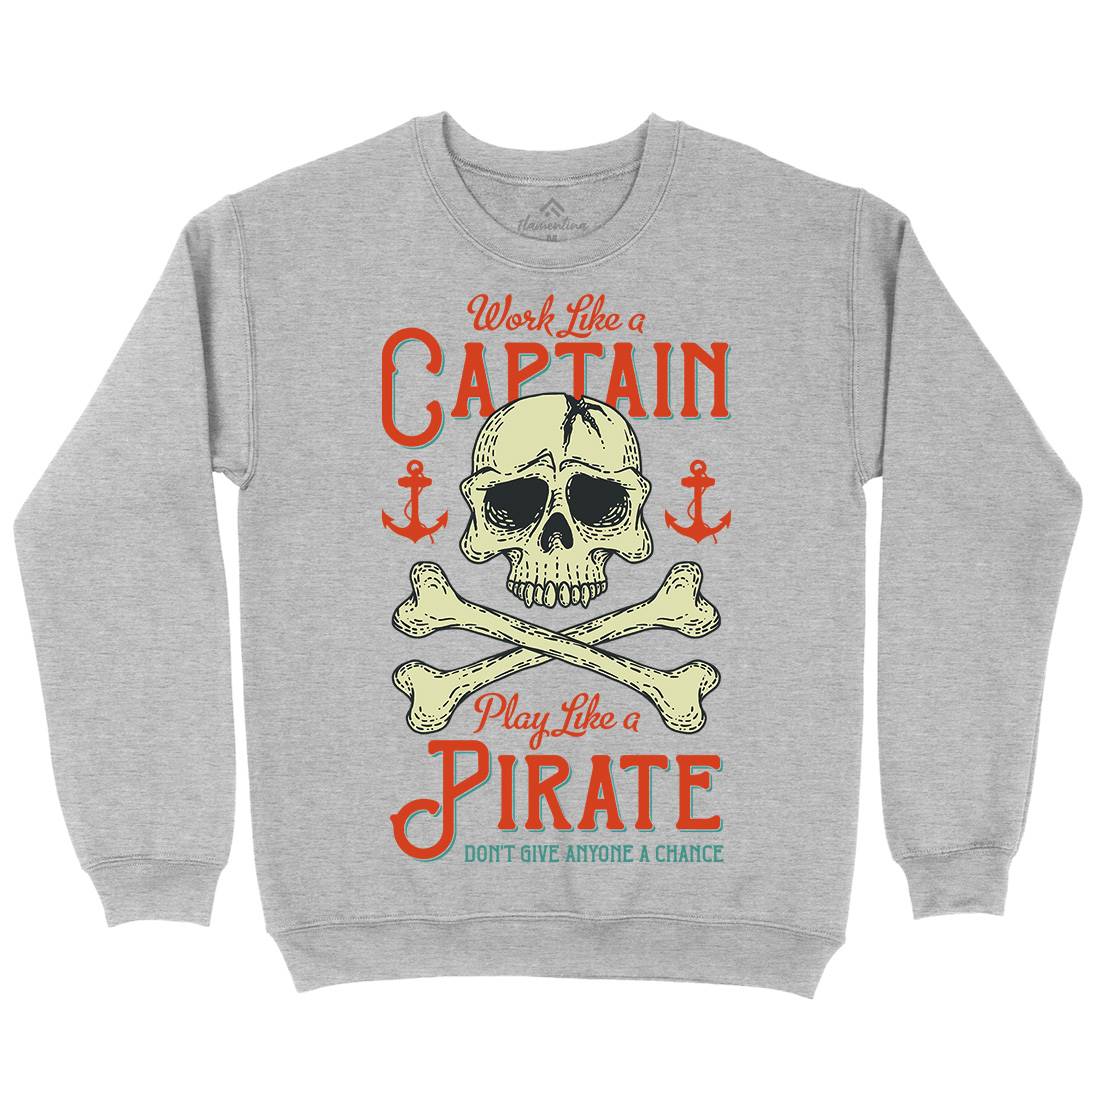 Captain Pirate Mens Crew Neck Sweatshirt Navy D915